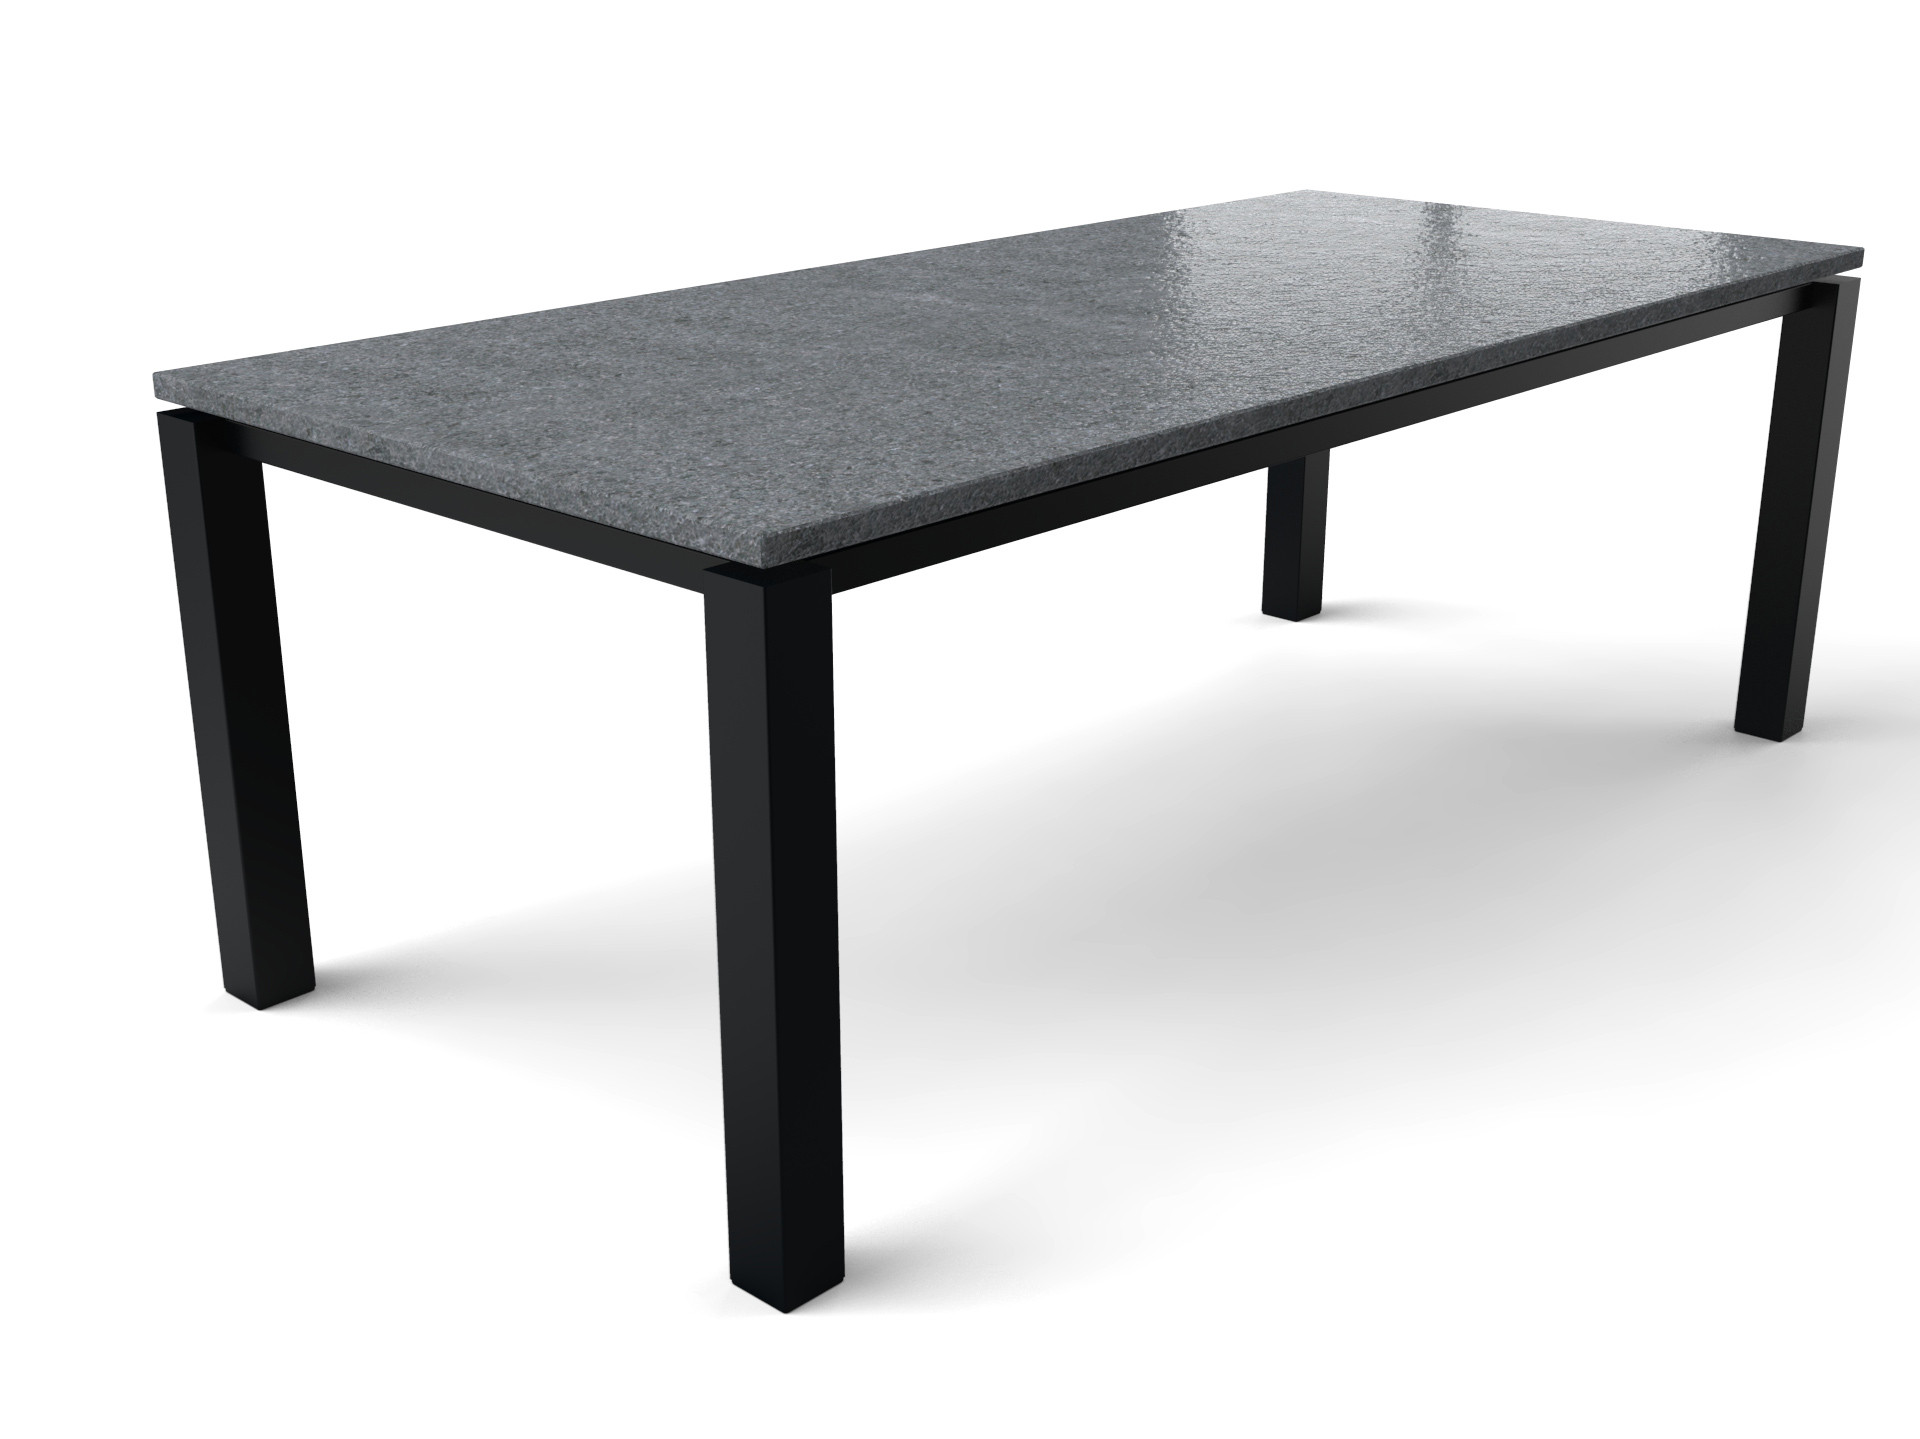 Granit-Esstisch mit Tischgestell aus beschichtetem Stahl